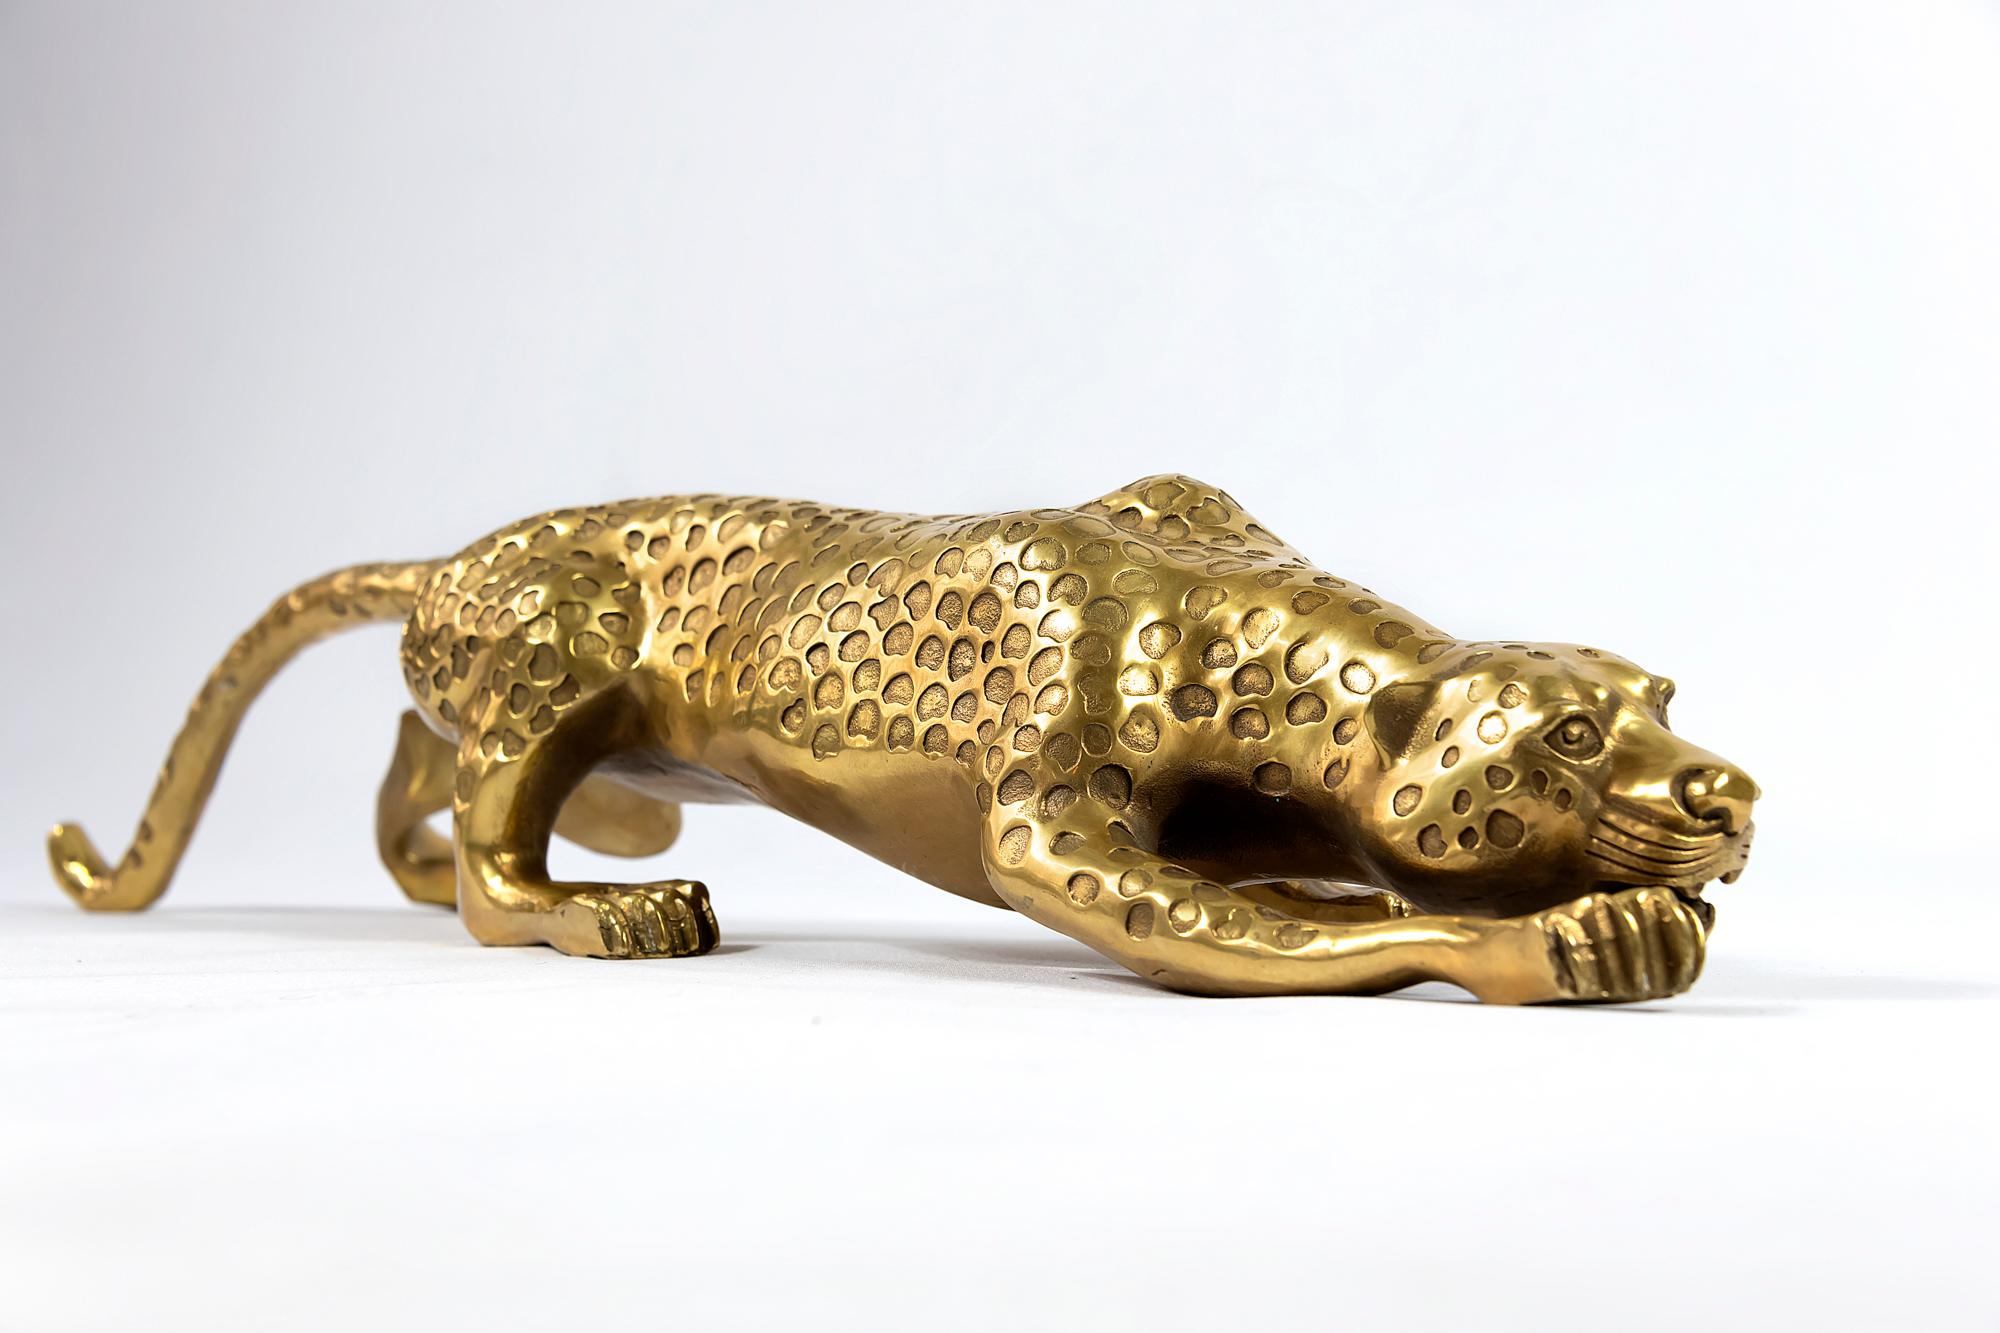 Italian Bronze Sneaking Gepard Sculpture